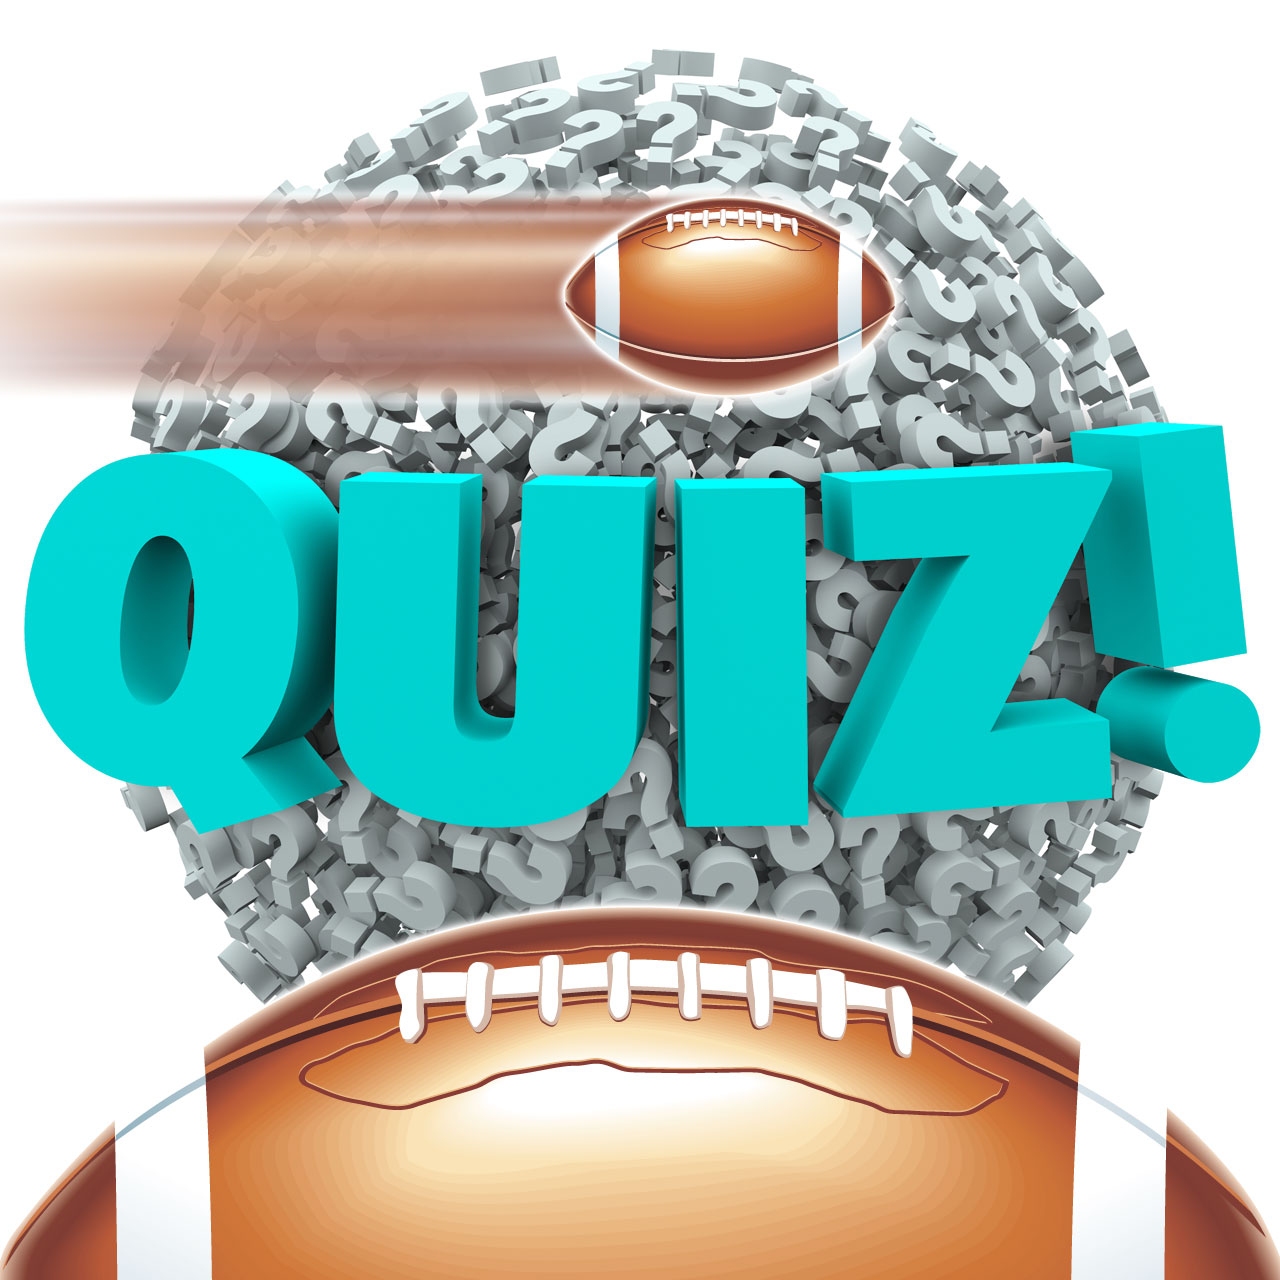 Ultimate Dallas Cowboys Quiz!, Nfl Quiz